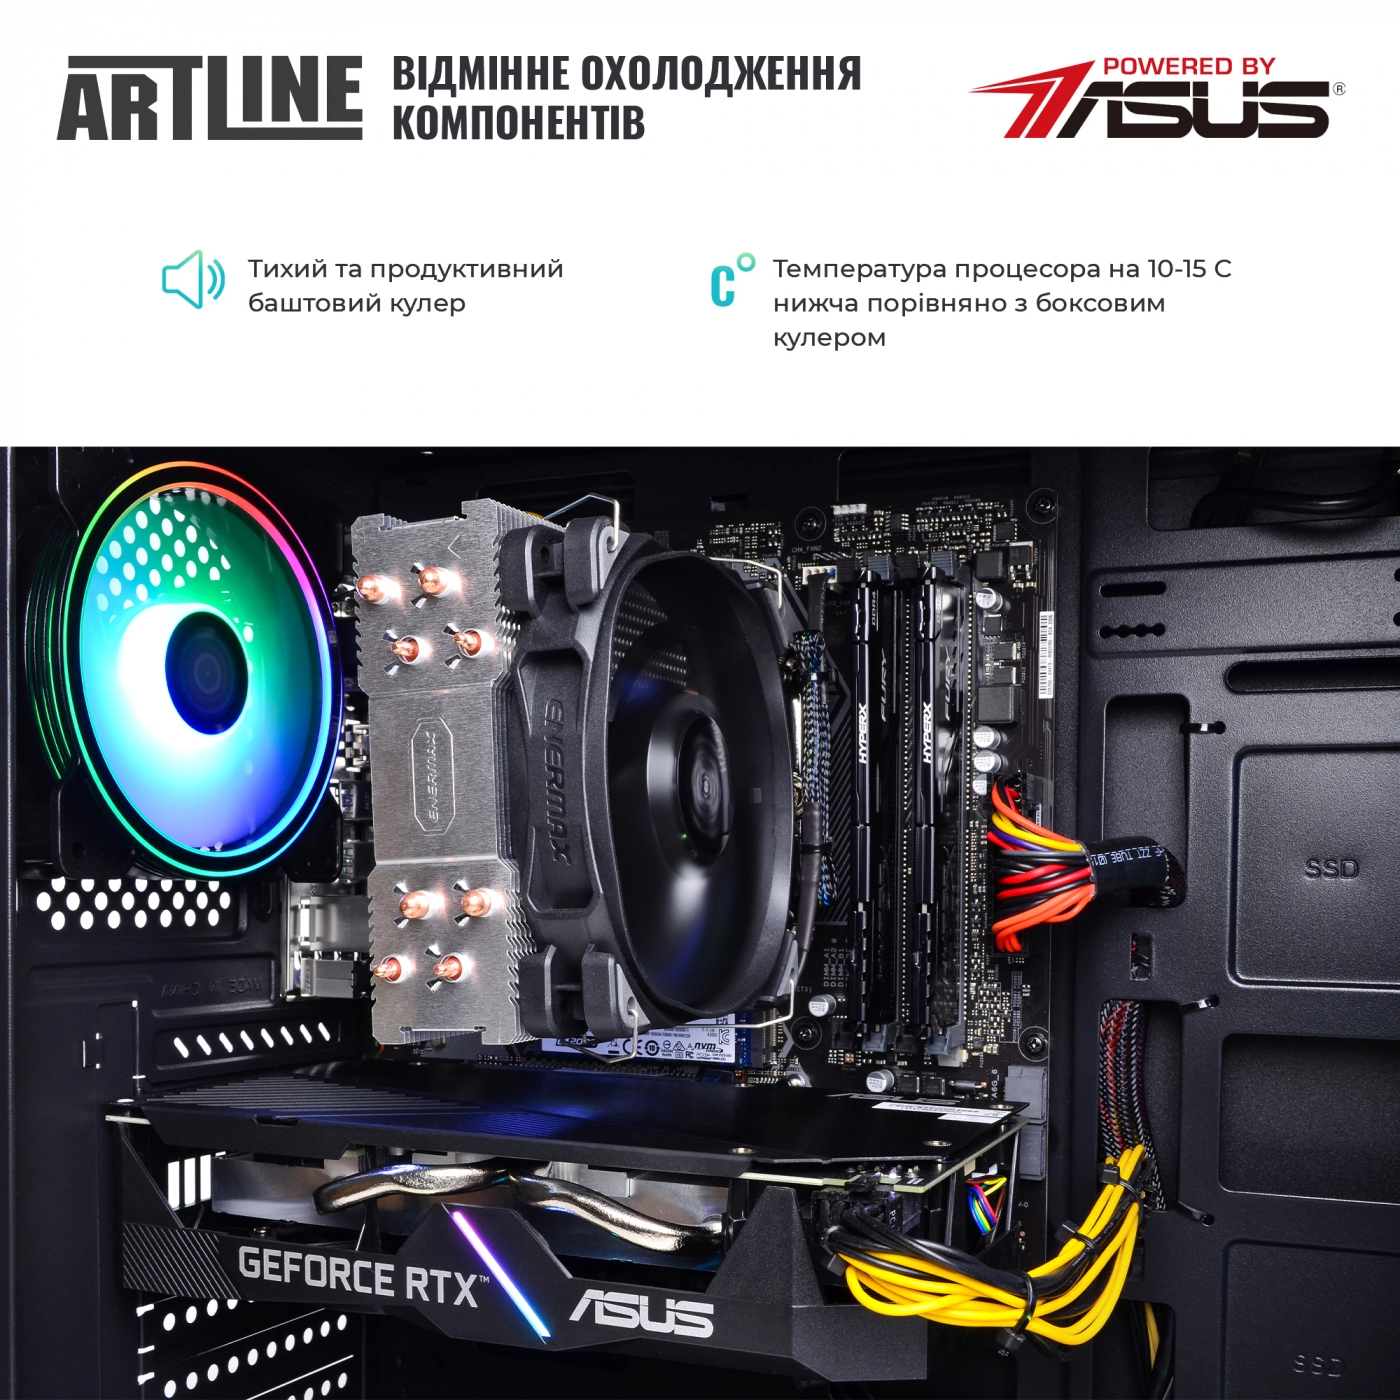 Купить Компьютер ARTLINE Gaming X55v40 - фото 7